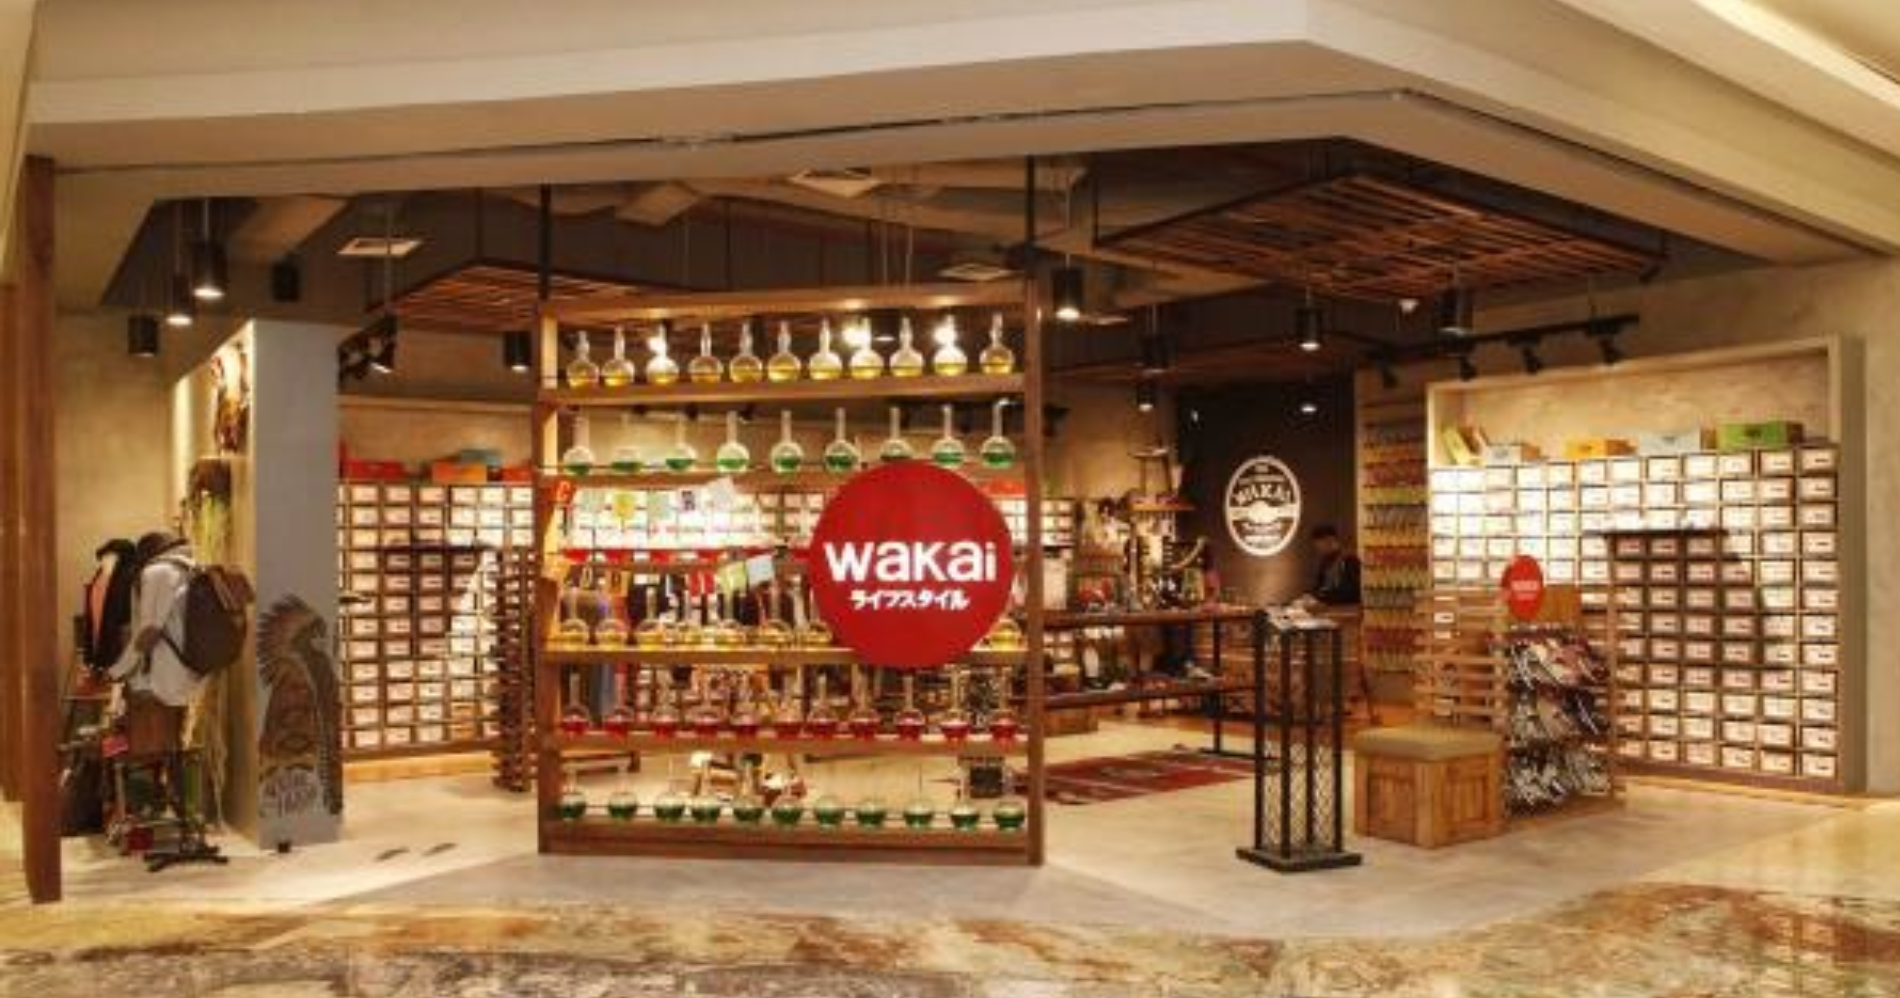 Wakai Store Mall Kasablanka. (Sumber gambar: Twitter @wakai_id)